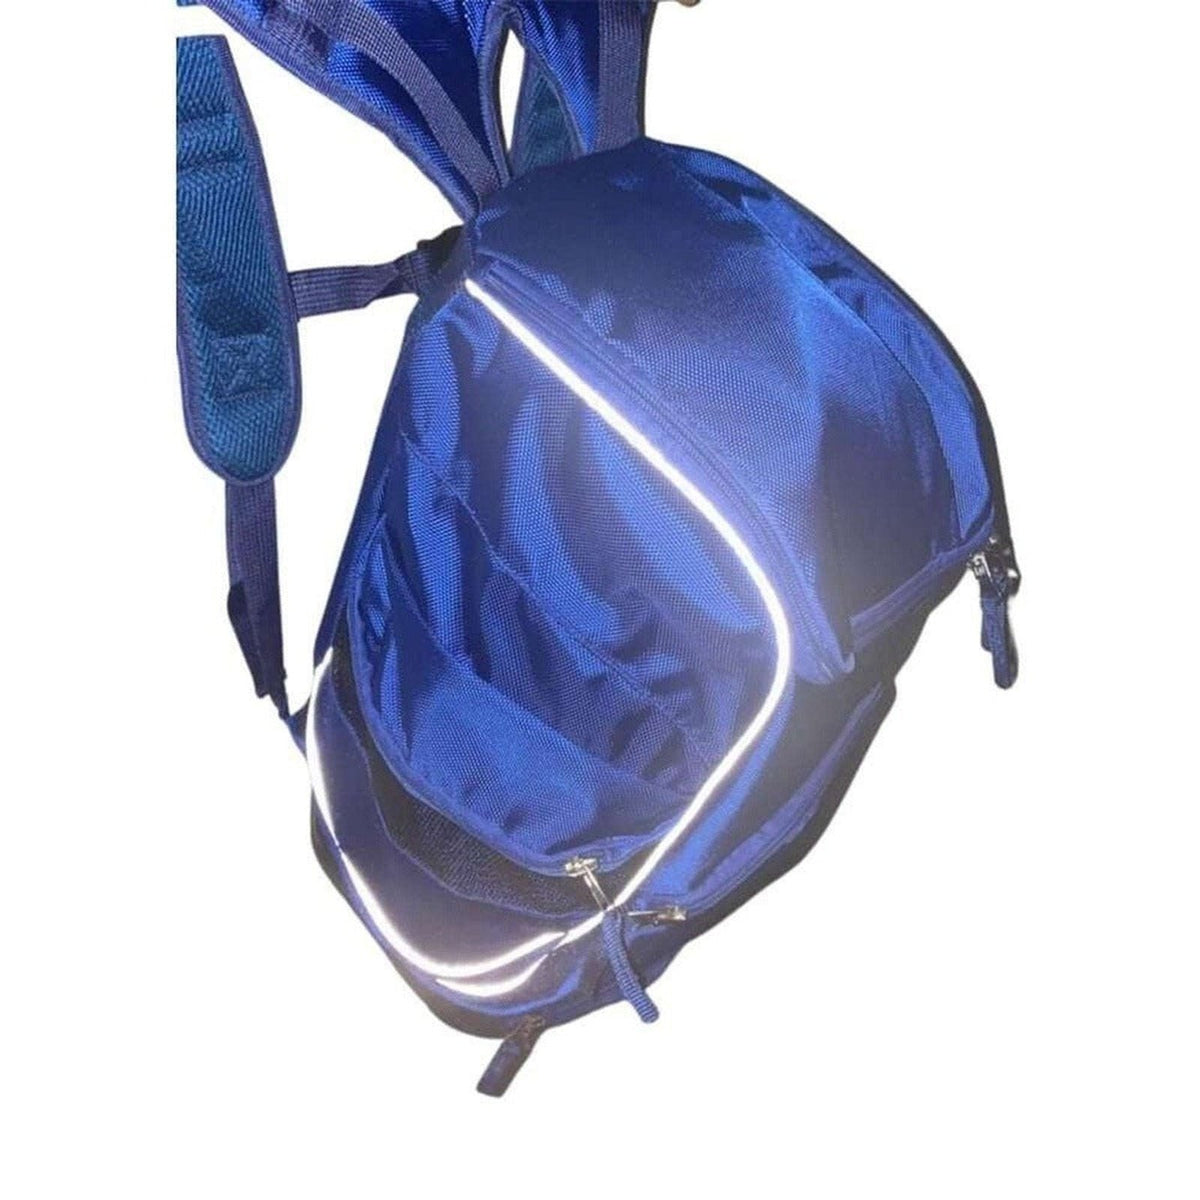 Kingston ASC - Lutra Premium Team Backpack 45 litre - Royal Blue